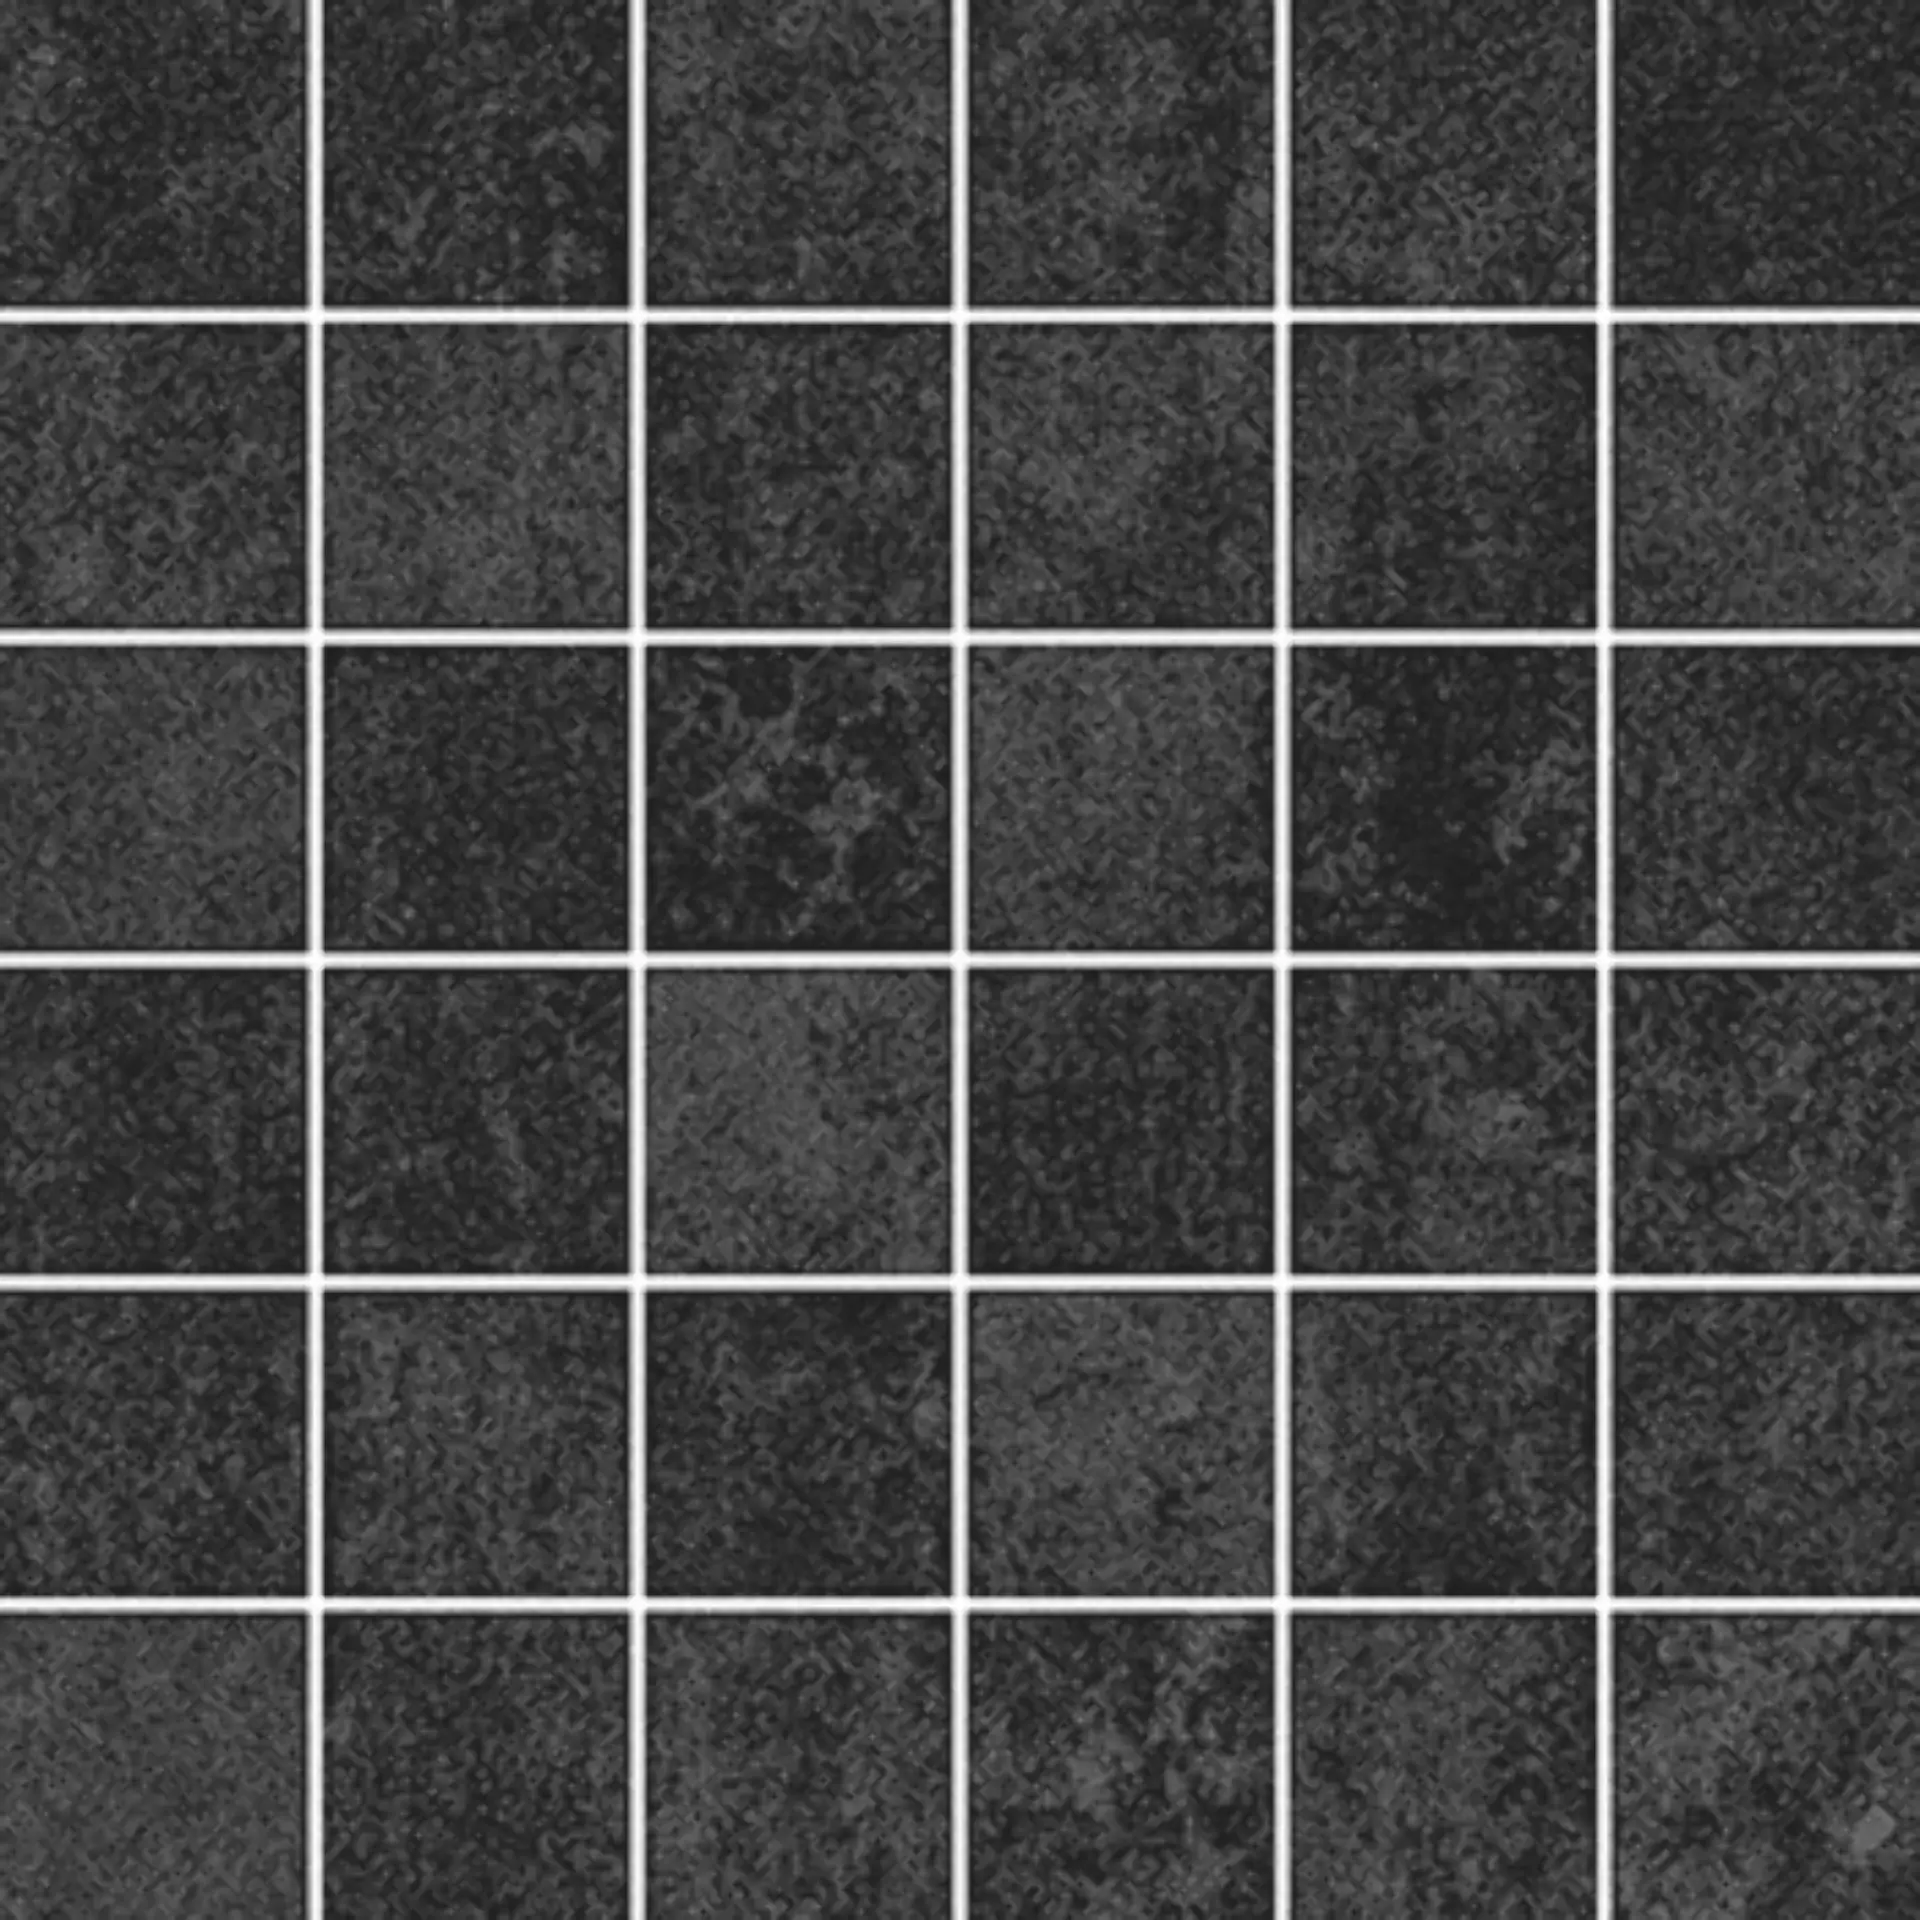 Wandfliese,Bodenfliese Villeroy & Boch Daytona Dark Grey Matt Dark Grey 2706-BP90 matt 5x5cm Mosaik (5x5) rektifiziert 6mm